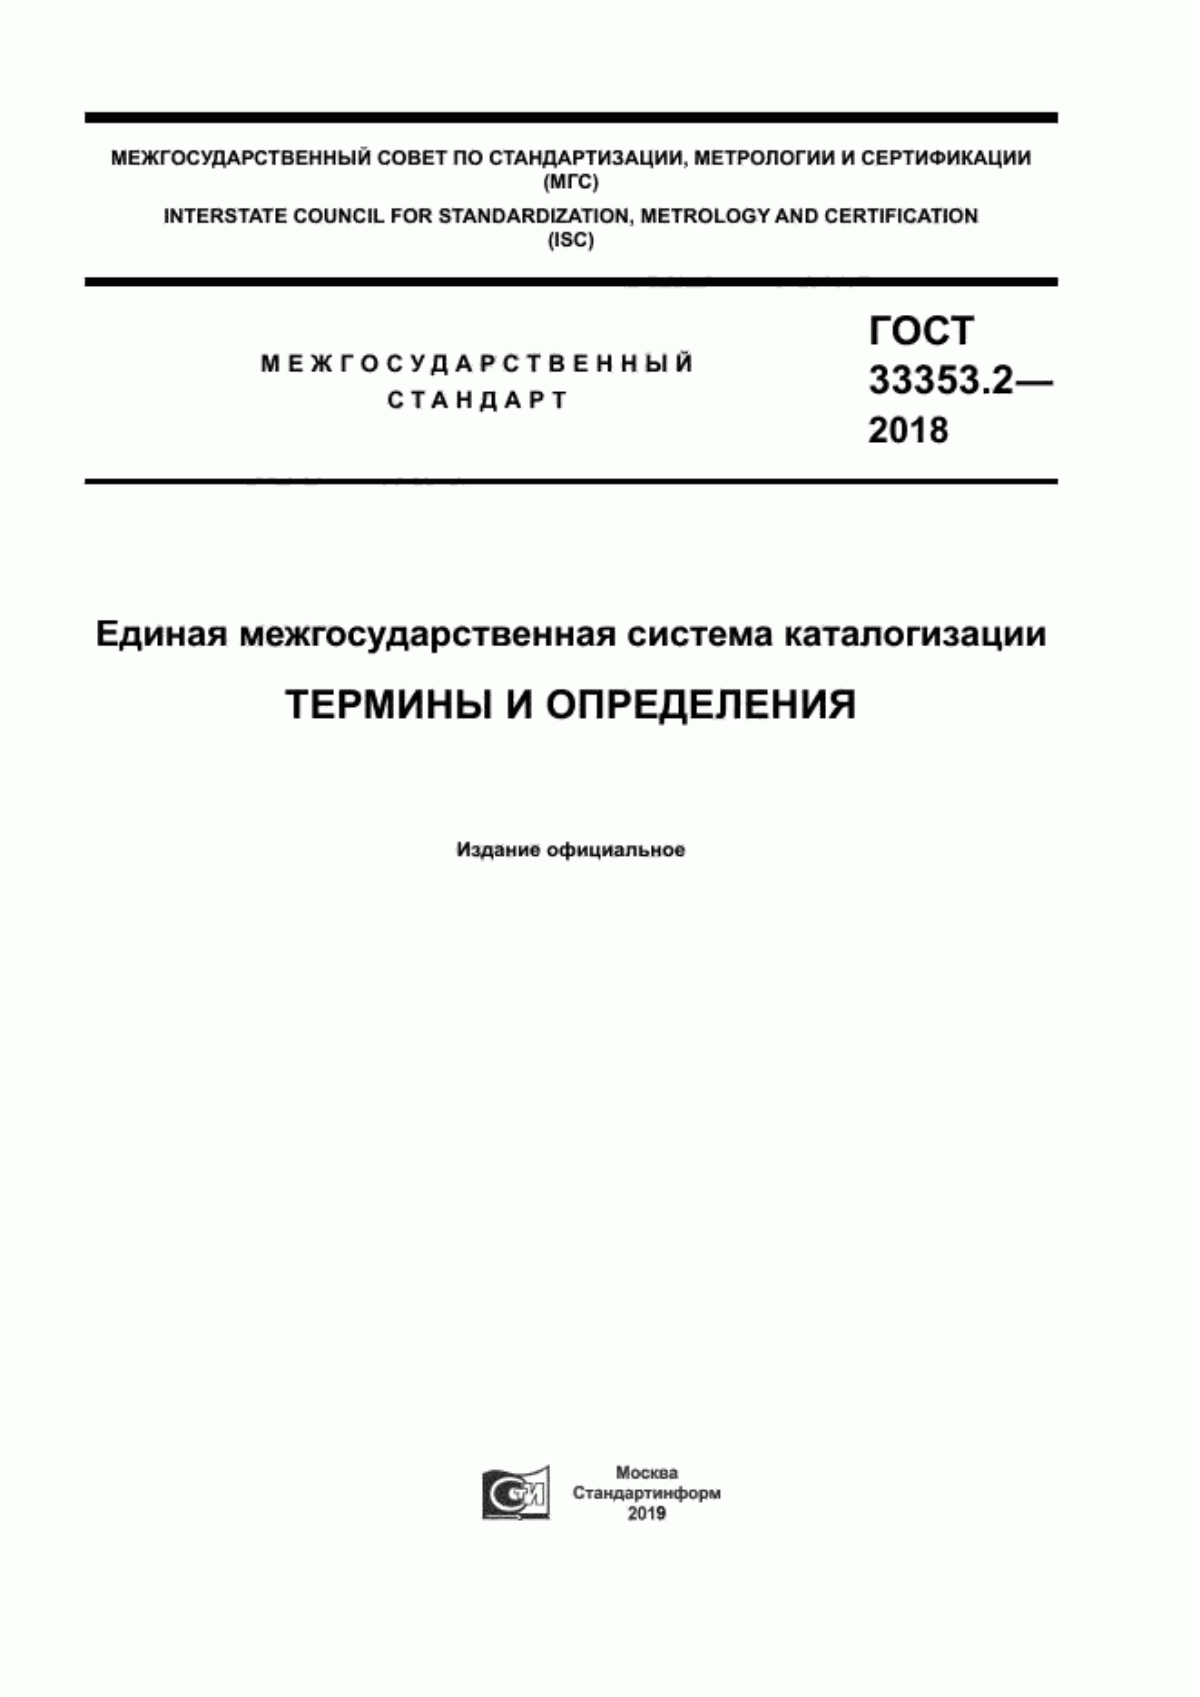 ГОСТ 33353.2-2018 Единая межгосударственная система каталогизации. Термины и определения